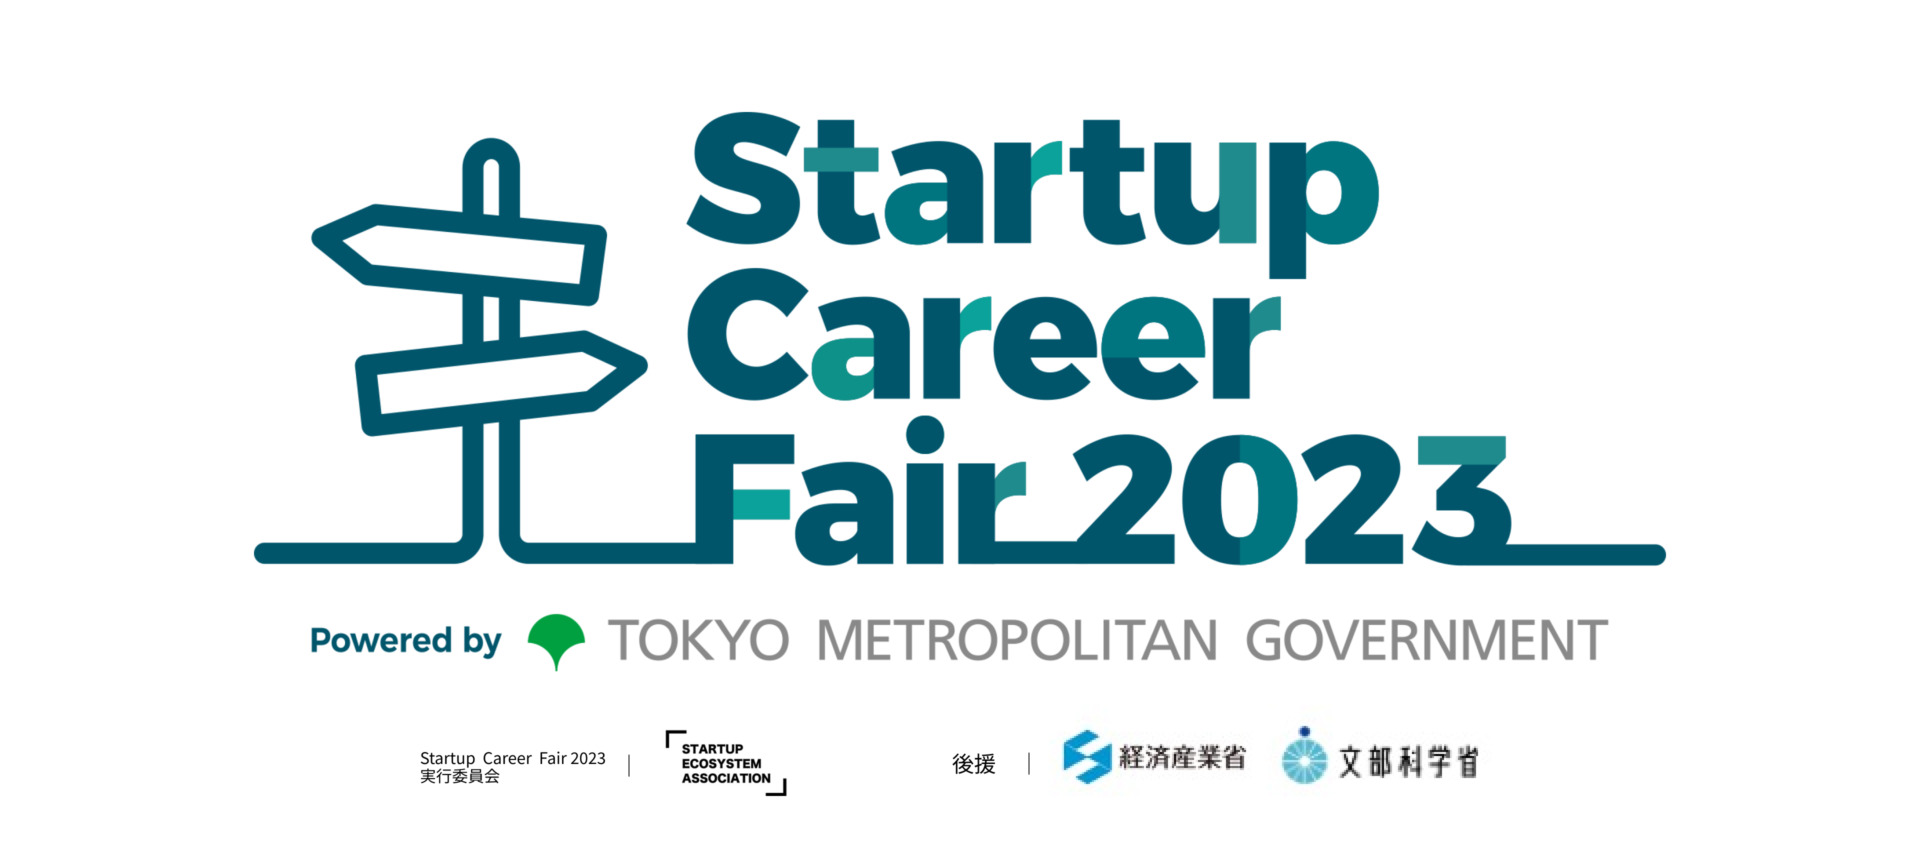 1月27日・28日に開催された東京都・一般社団法人スタートアップエコシステム協会主催のキャリアイベント「Startup Career Fair 2023」に出展しました。